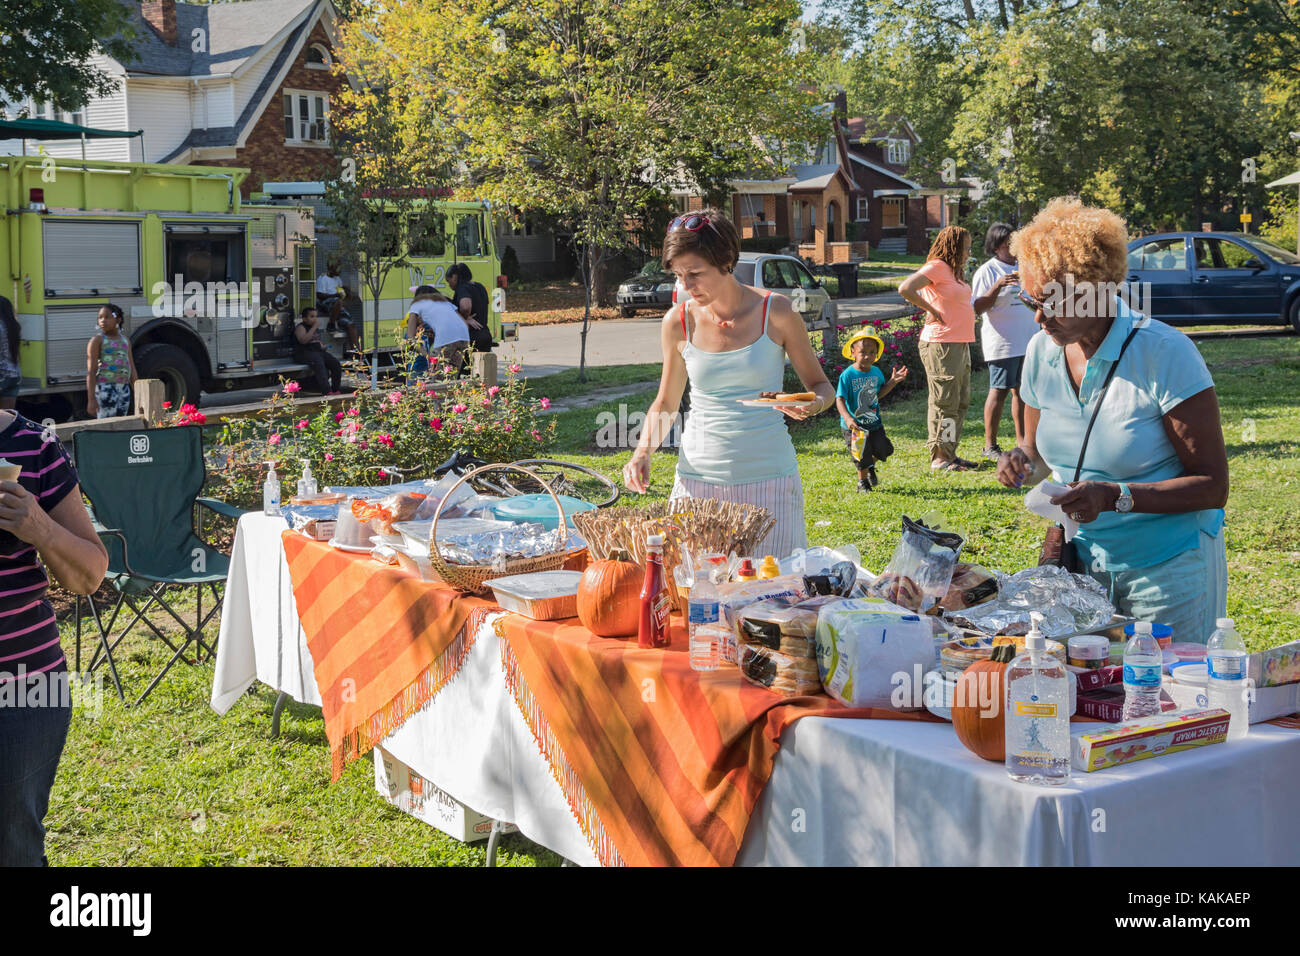 Detroit, Michigan - voisins de table des aliments pendant une fête de quartier dans le quartier de Morningside. Banque D'Images